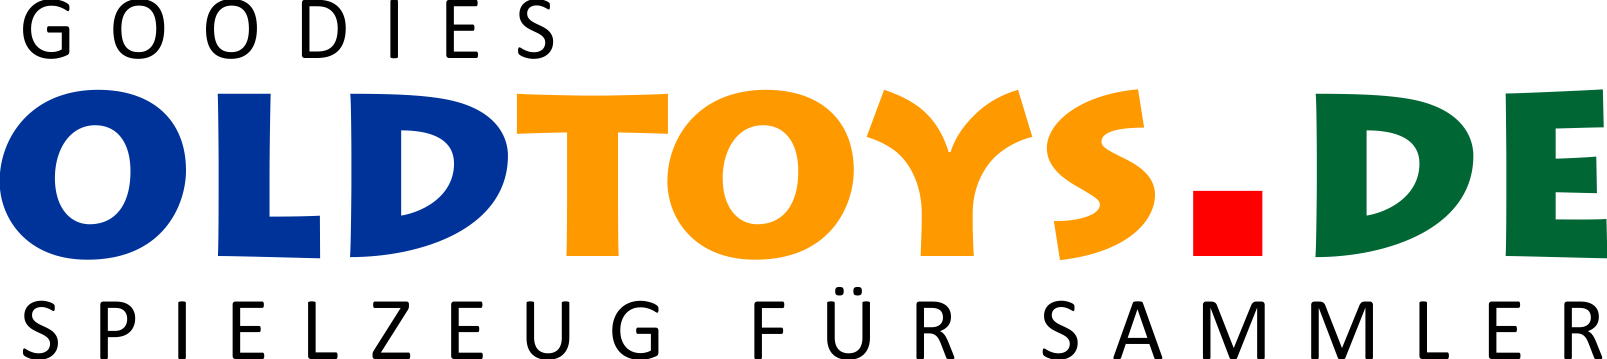 Goodies Old toys Logo